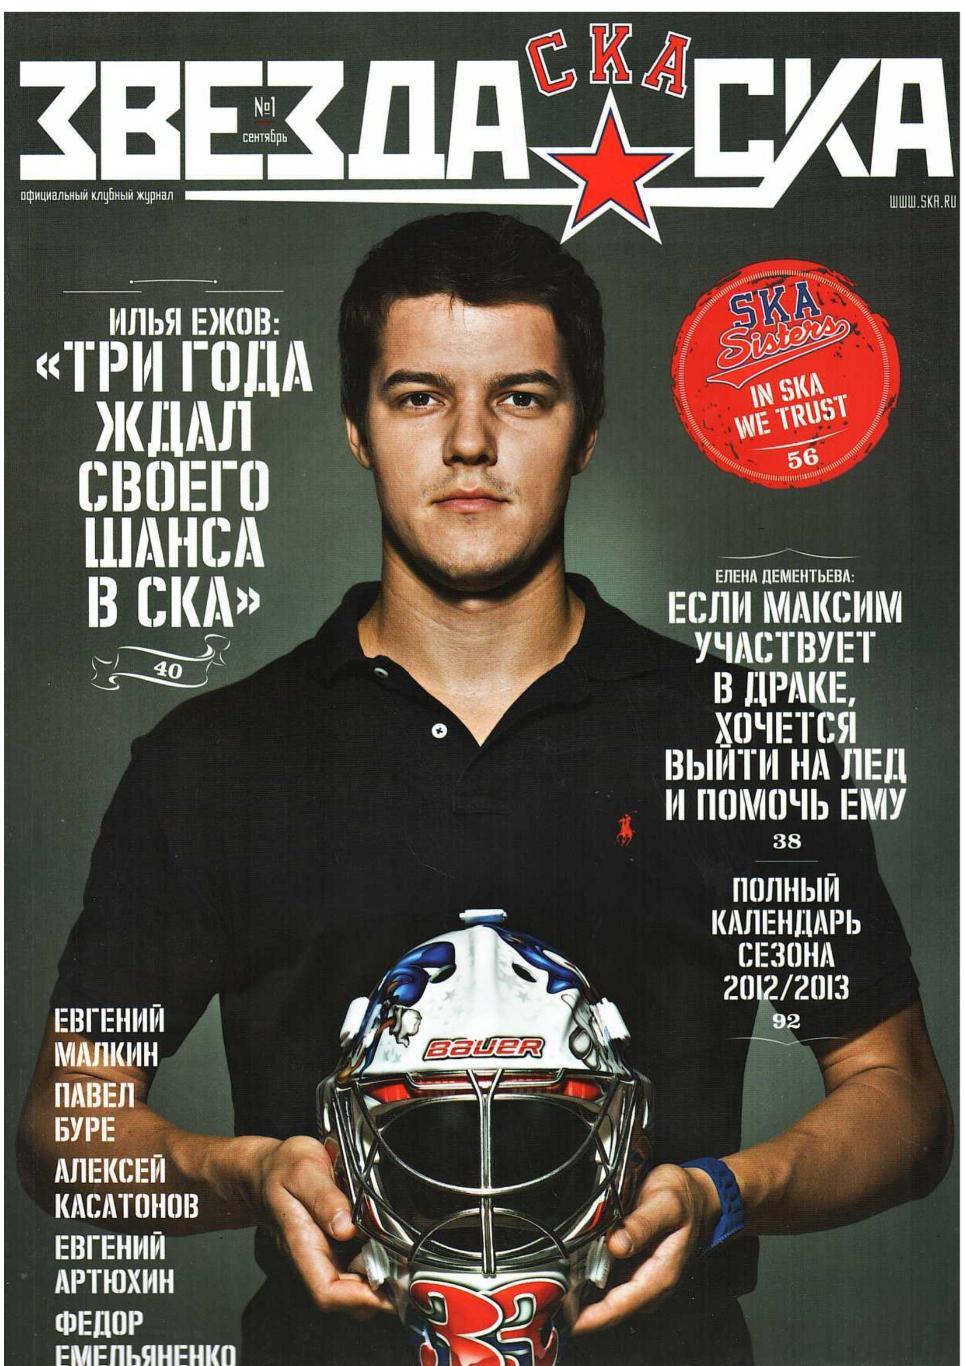 Хоккей. Звезда СКА. № 1, сентябрь 2012. Официальный клубный журнал СКА (Санкт-Пе